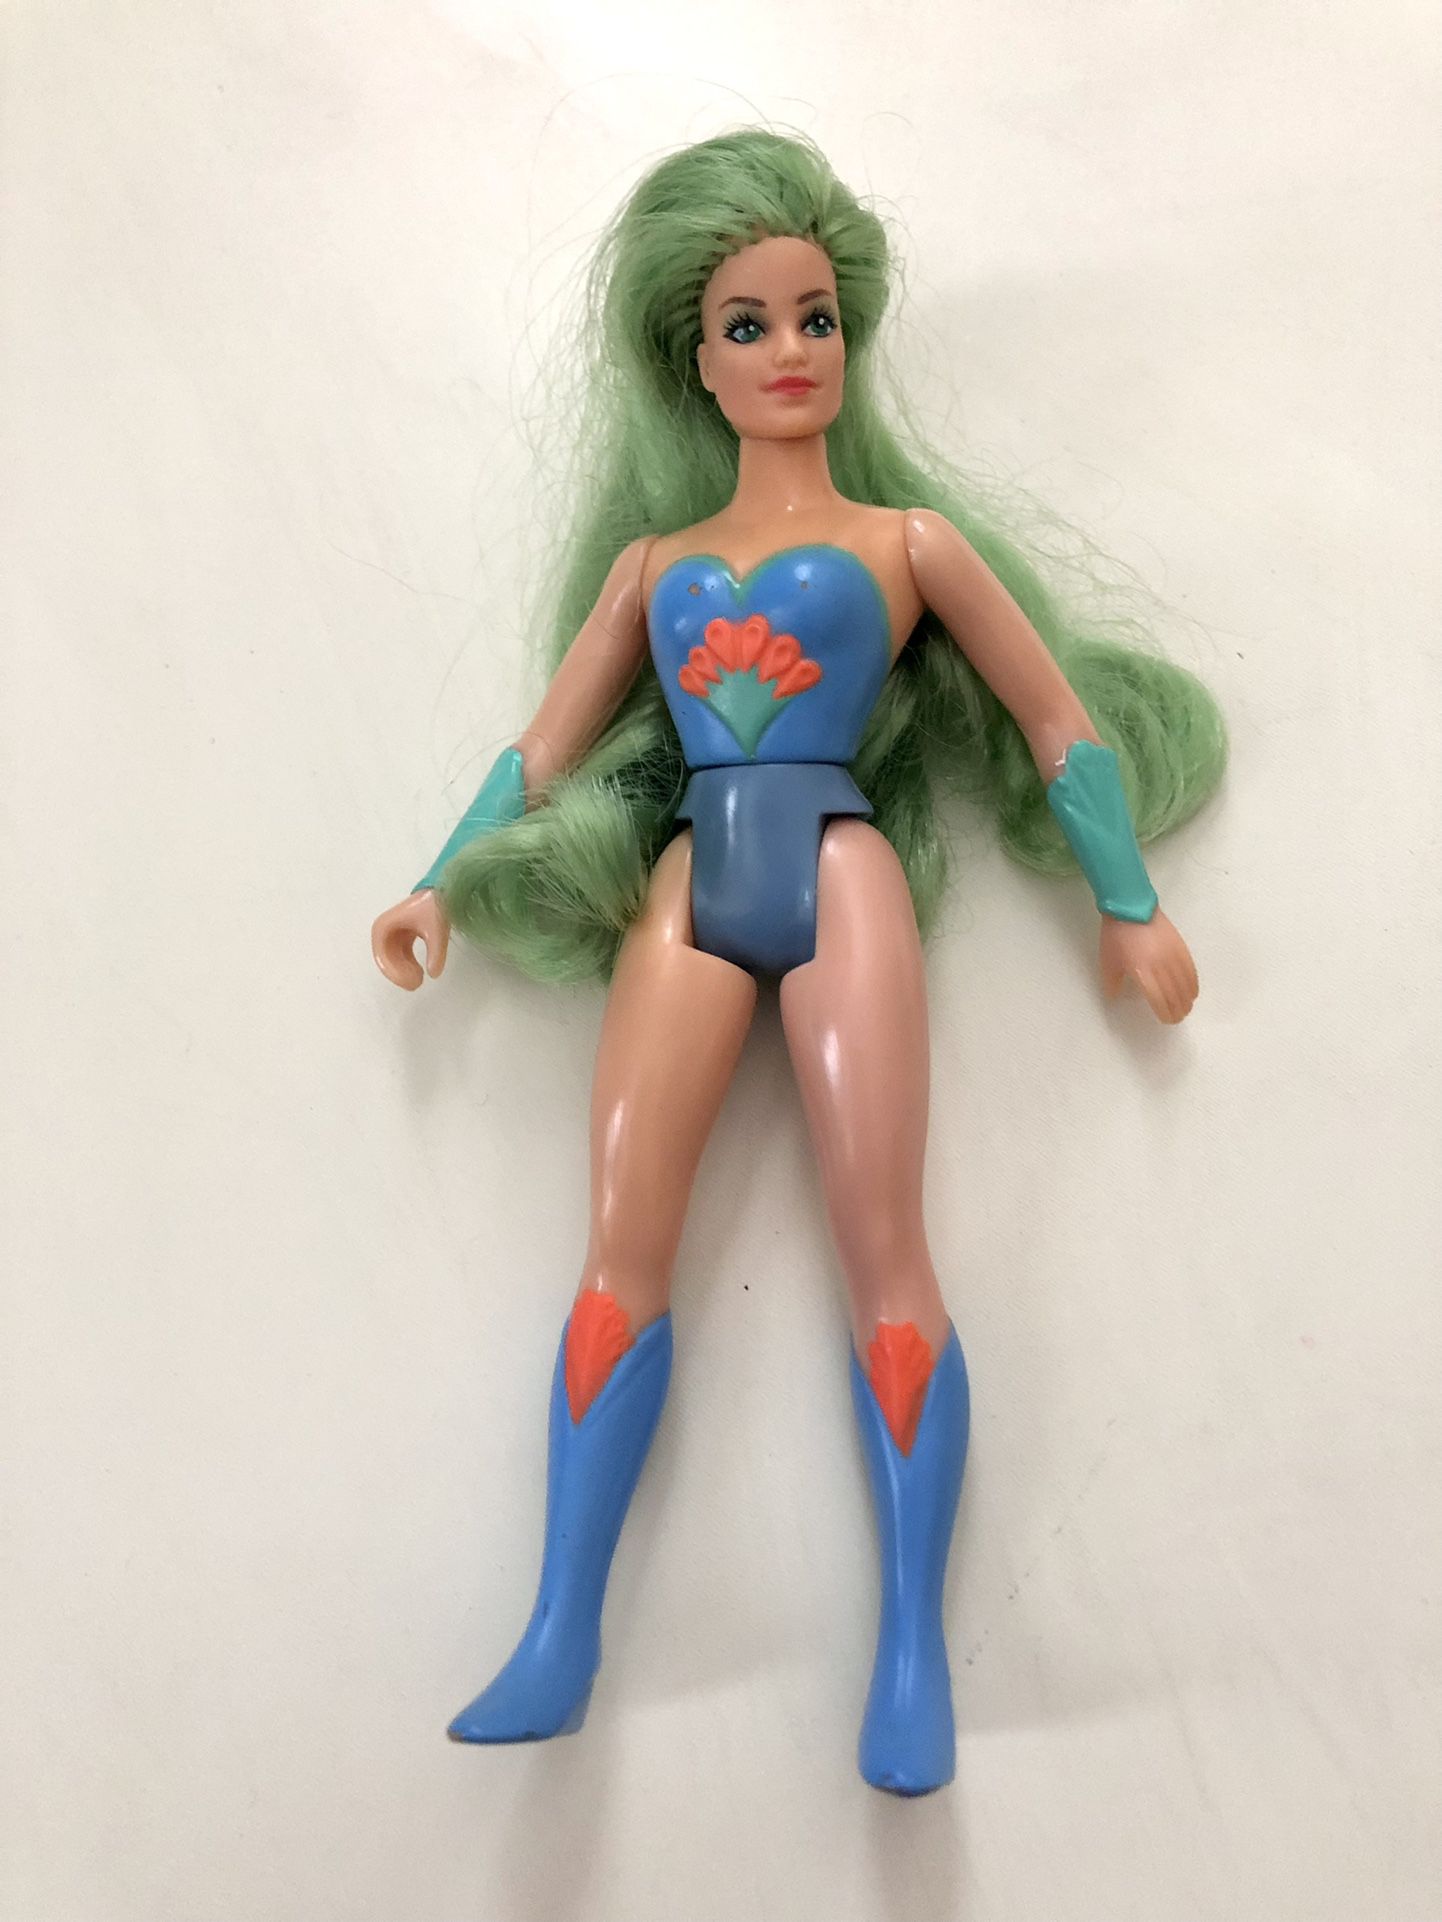 Vintage She-ra Peekablue Toy Figure